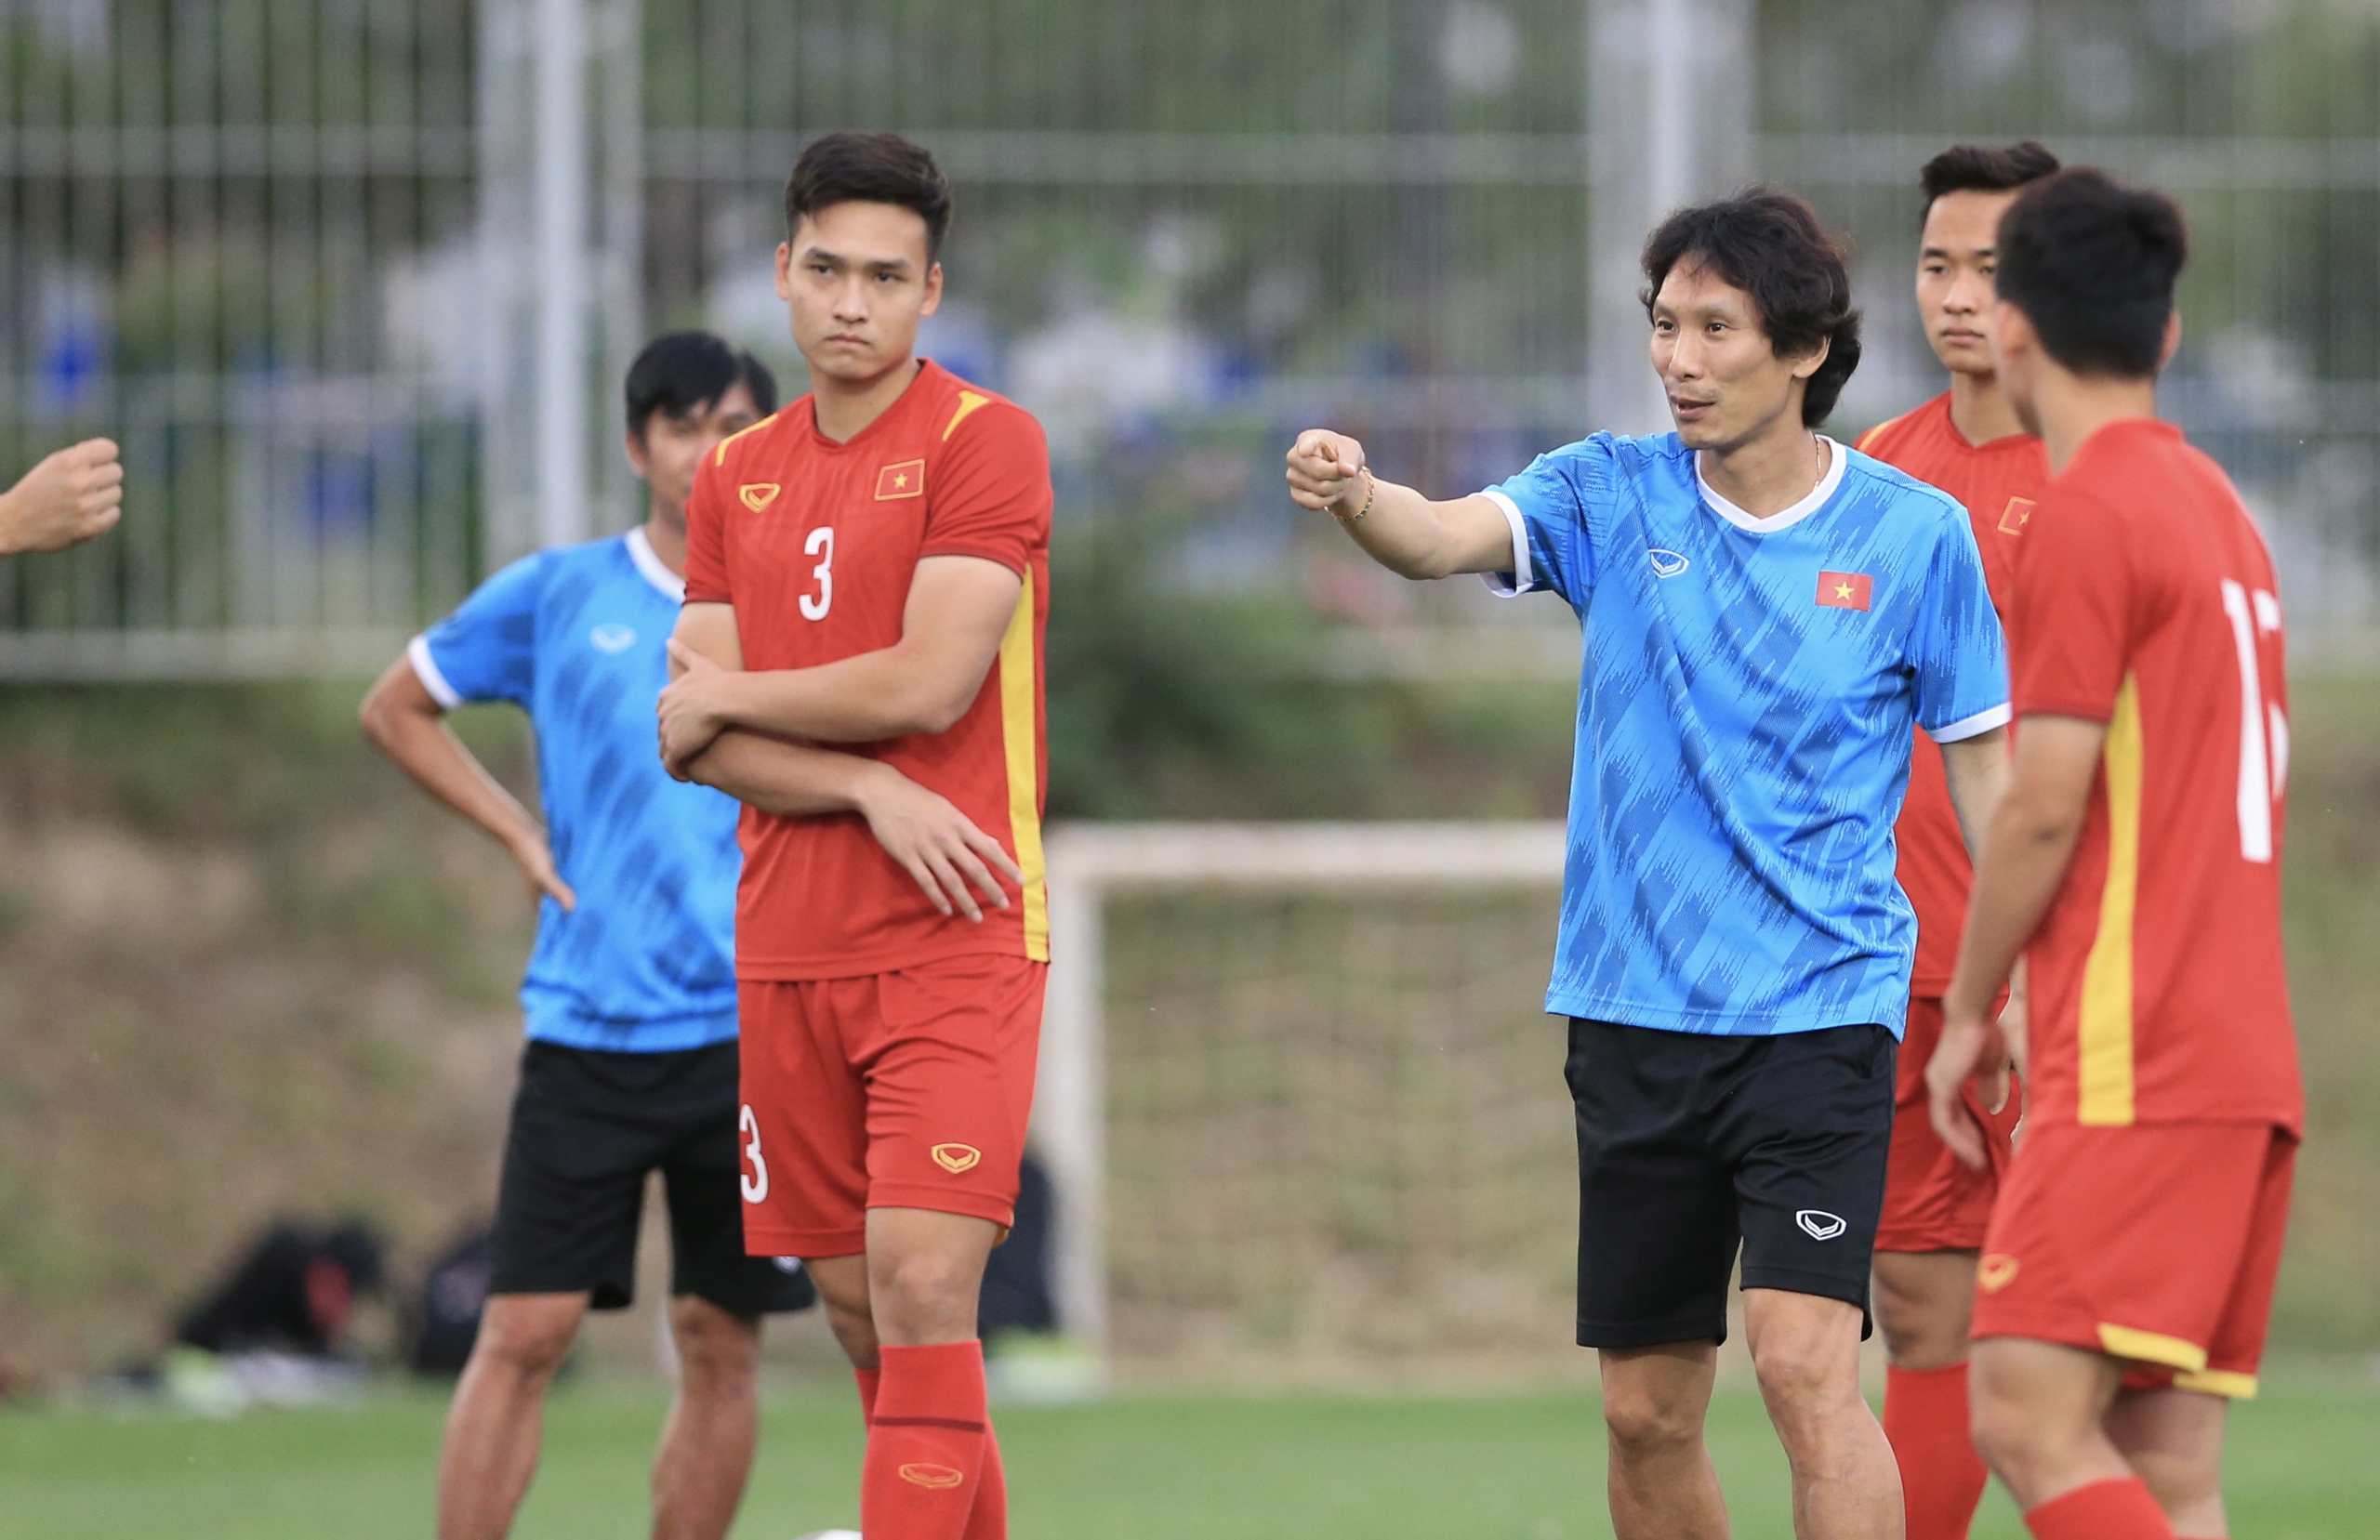 HLV Gong Oh-kyun dù không có nhiều thời gian nhưng đã thổi luồng sinh khí mới giúp đội tuyển U.23 Việt Nam có bộ mặt tích cực ở VCK U.23 châu Á 2022